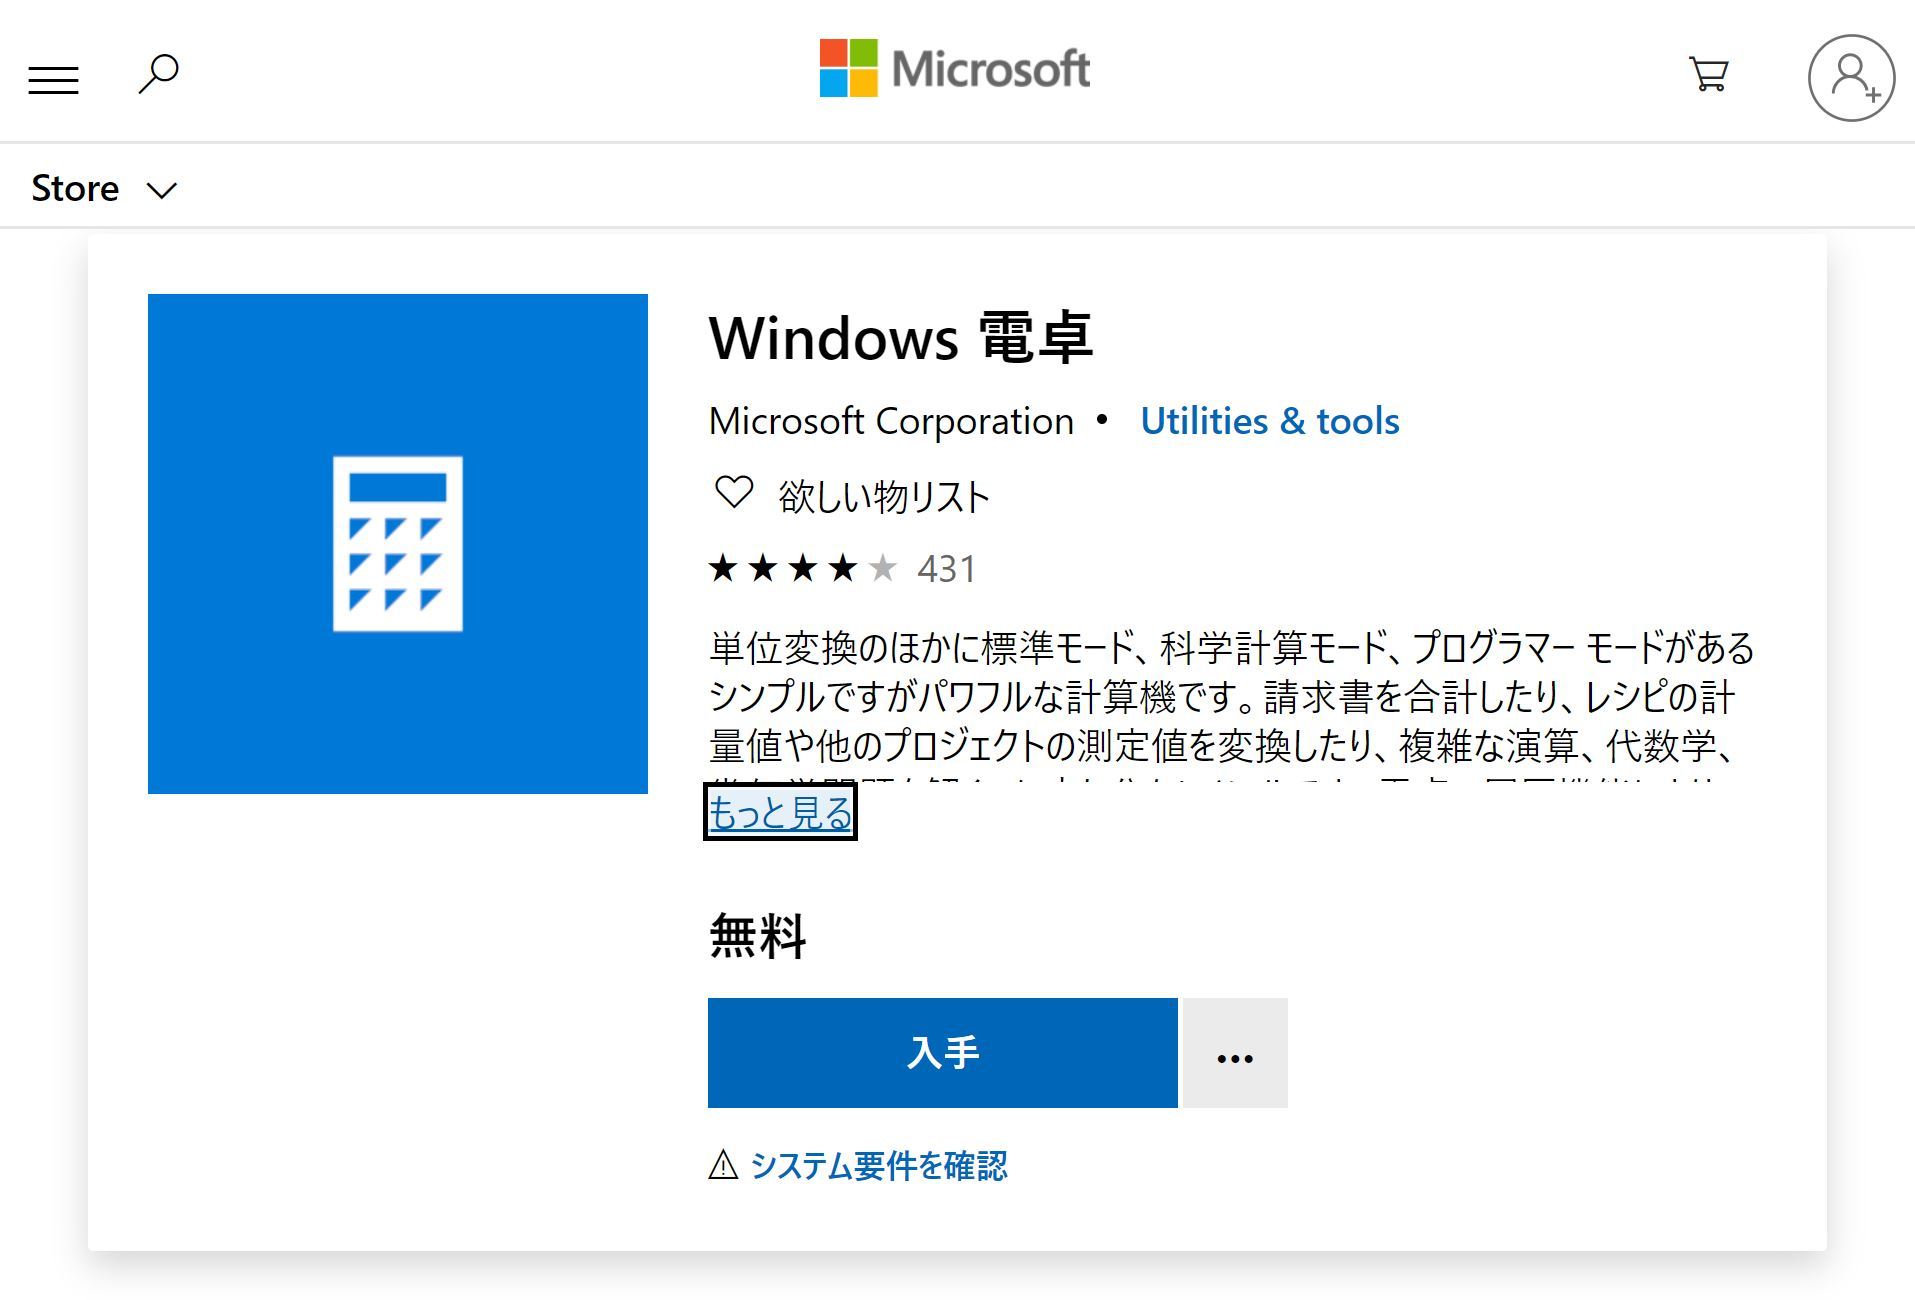  Windows 10́uWindowsdv